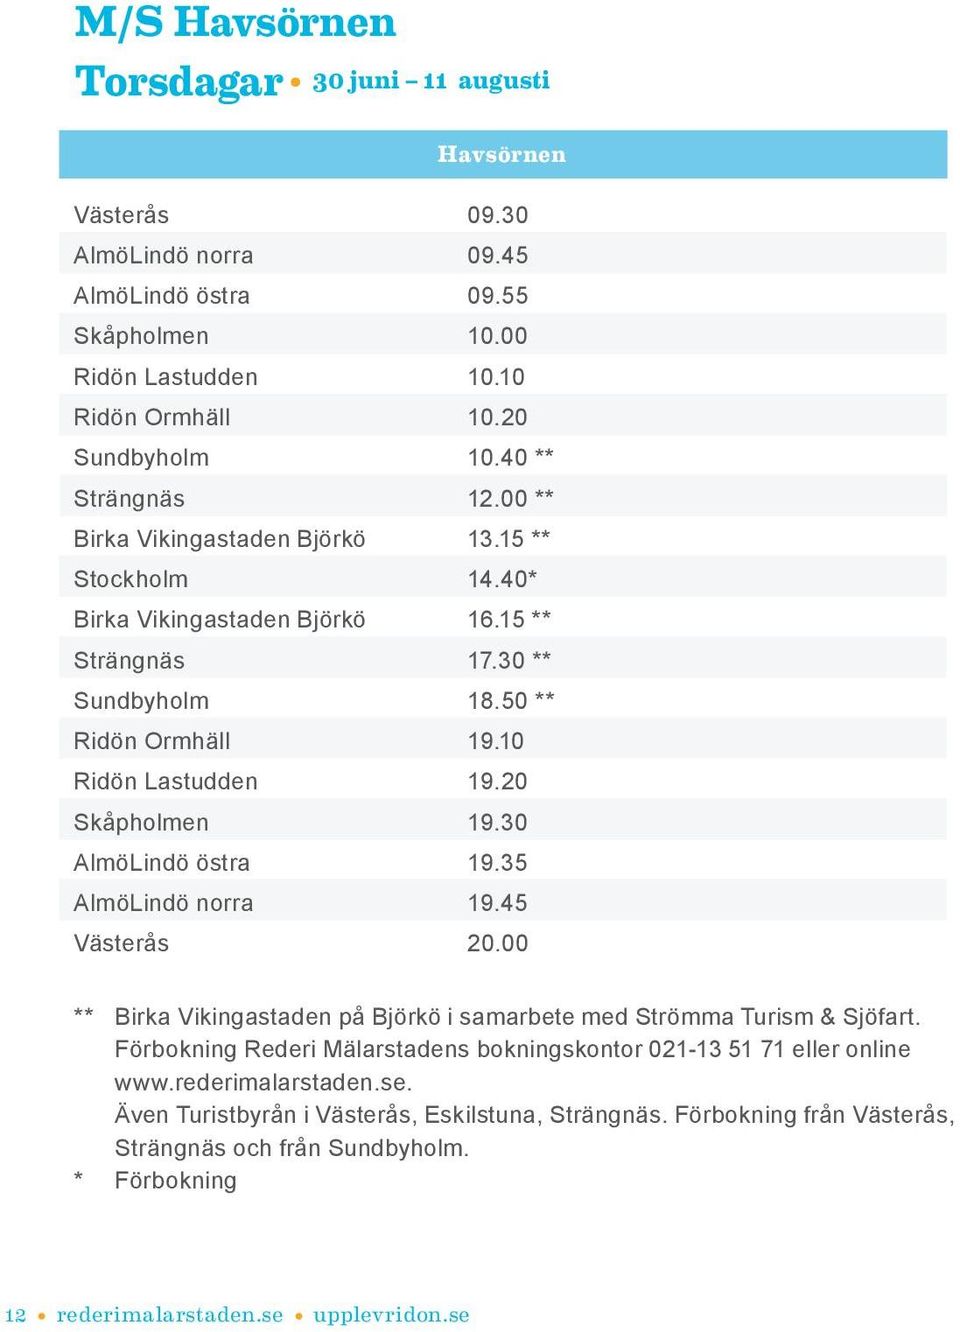 20 Skåpholmen 19.30 AlmöLindö östra 19.35 AlmöLindö norra 19.45 Västerås 20.00 ** Birka Vikingastaden på Björkö i samarbete med Strömma Turism & Sjöfart.